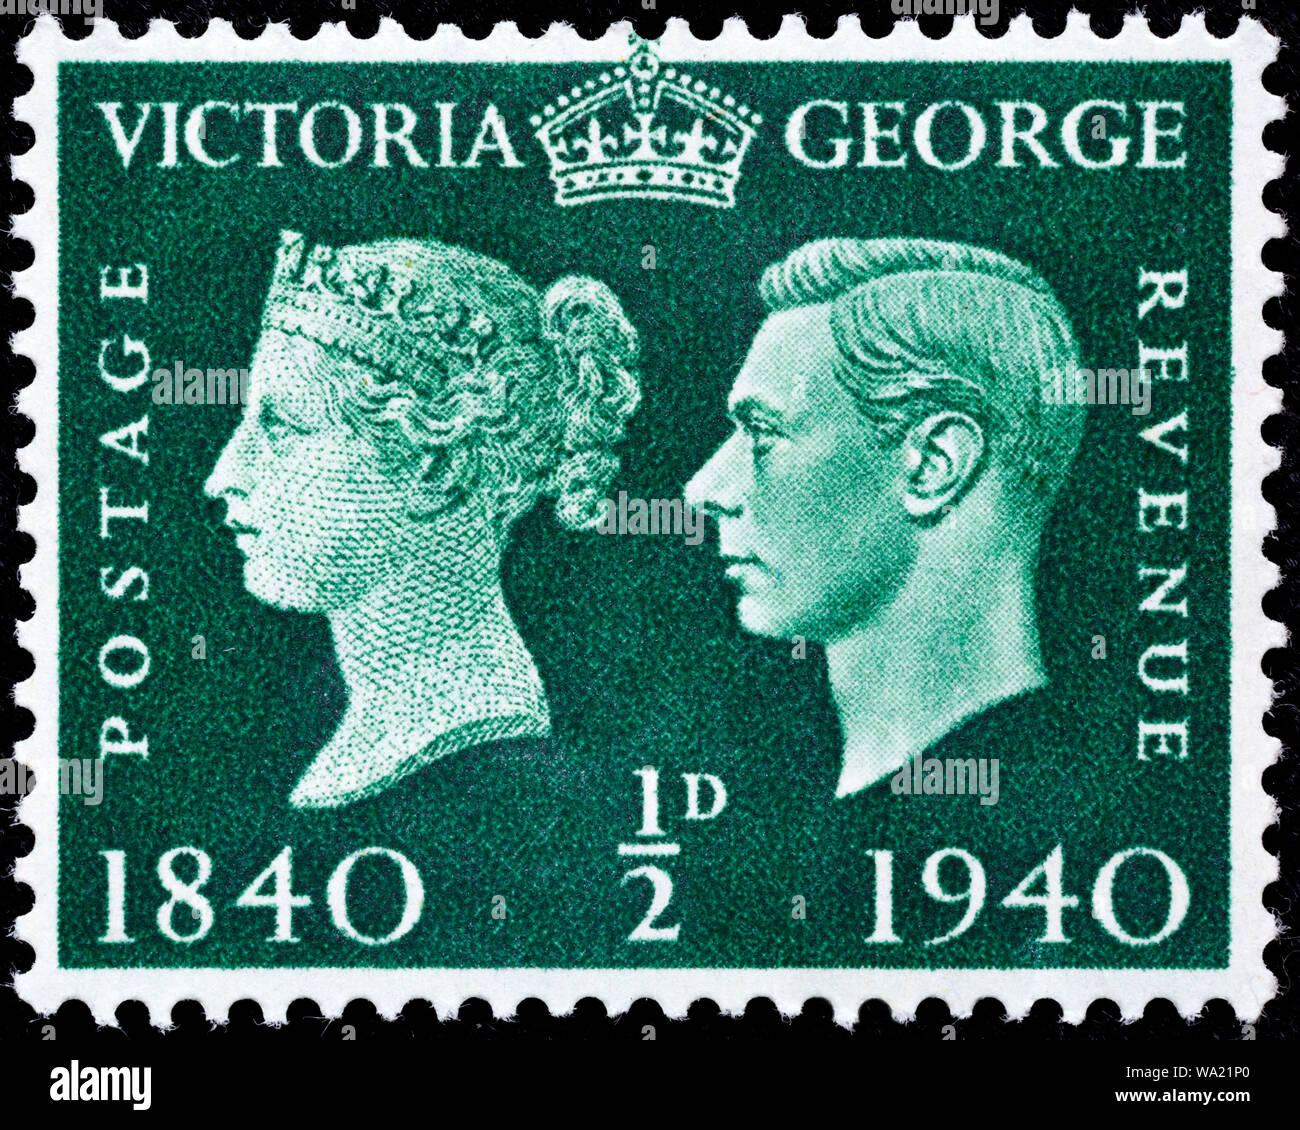 Des timbres du Centenaire, la reine Victoria, le roi George VI, timbre-poste, UK, 1940 Banque D'Images